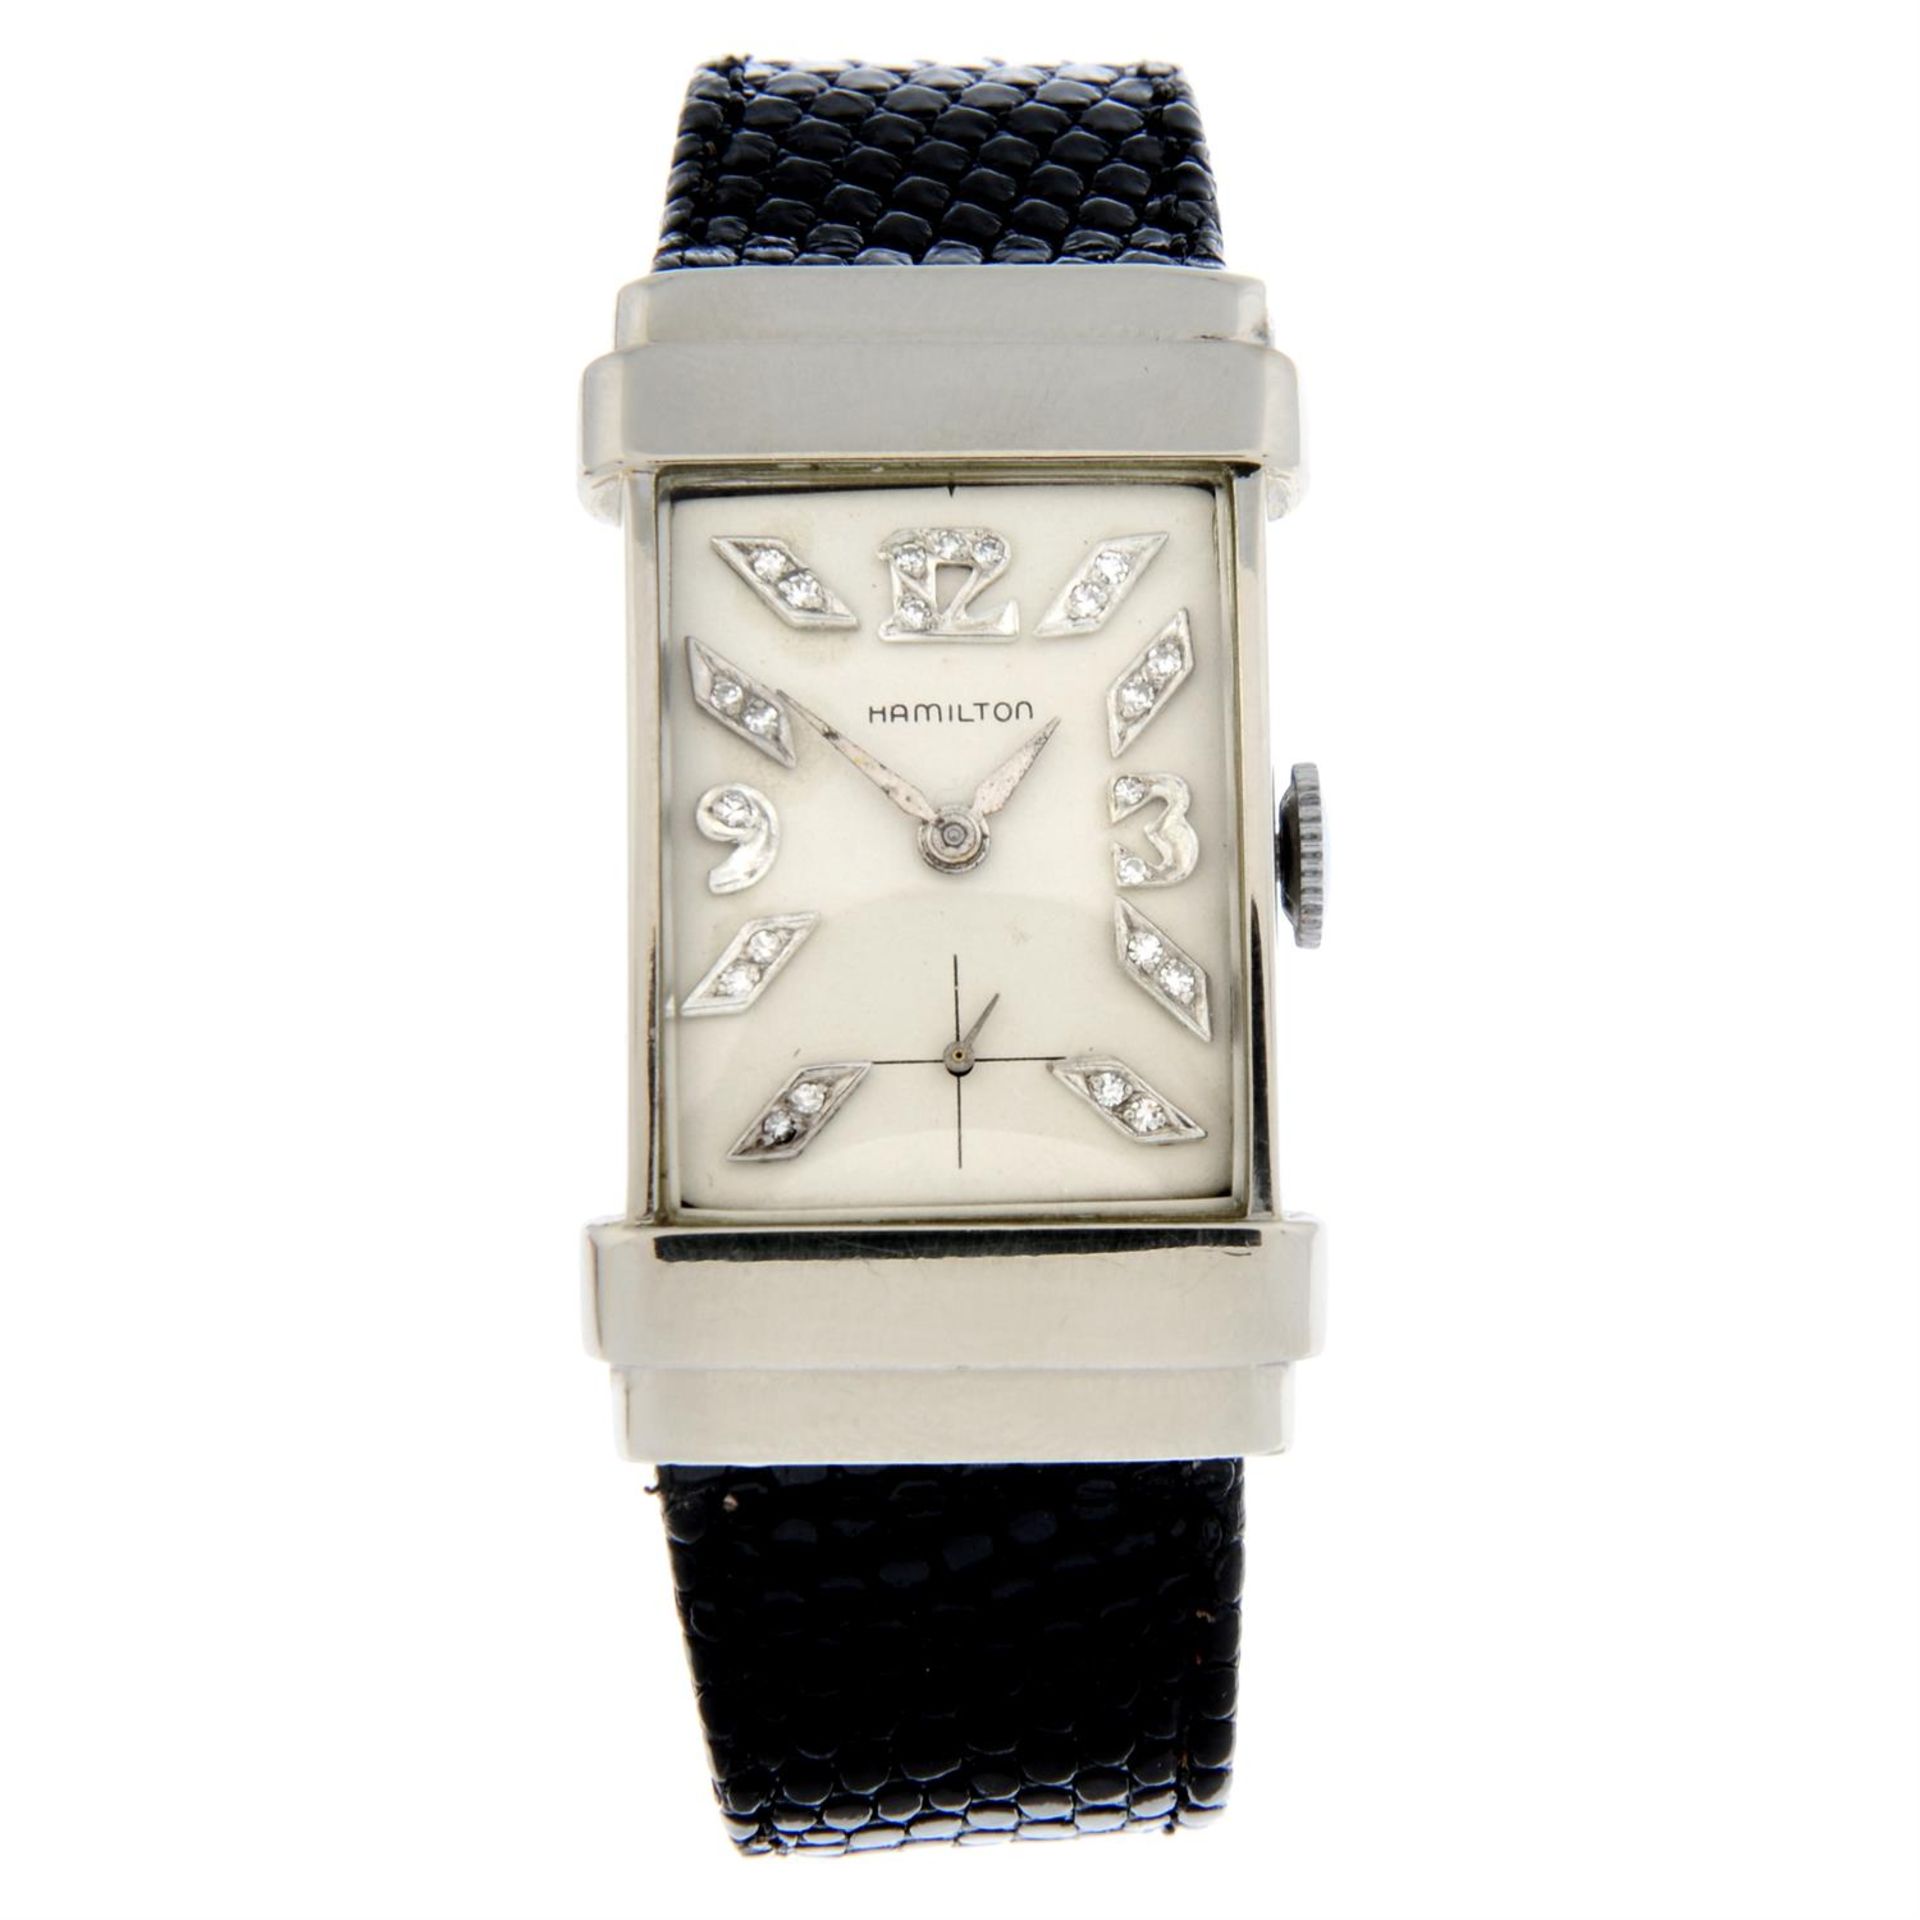 HAMILTON - a white metal wrist watch, 20x39mm.